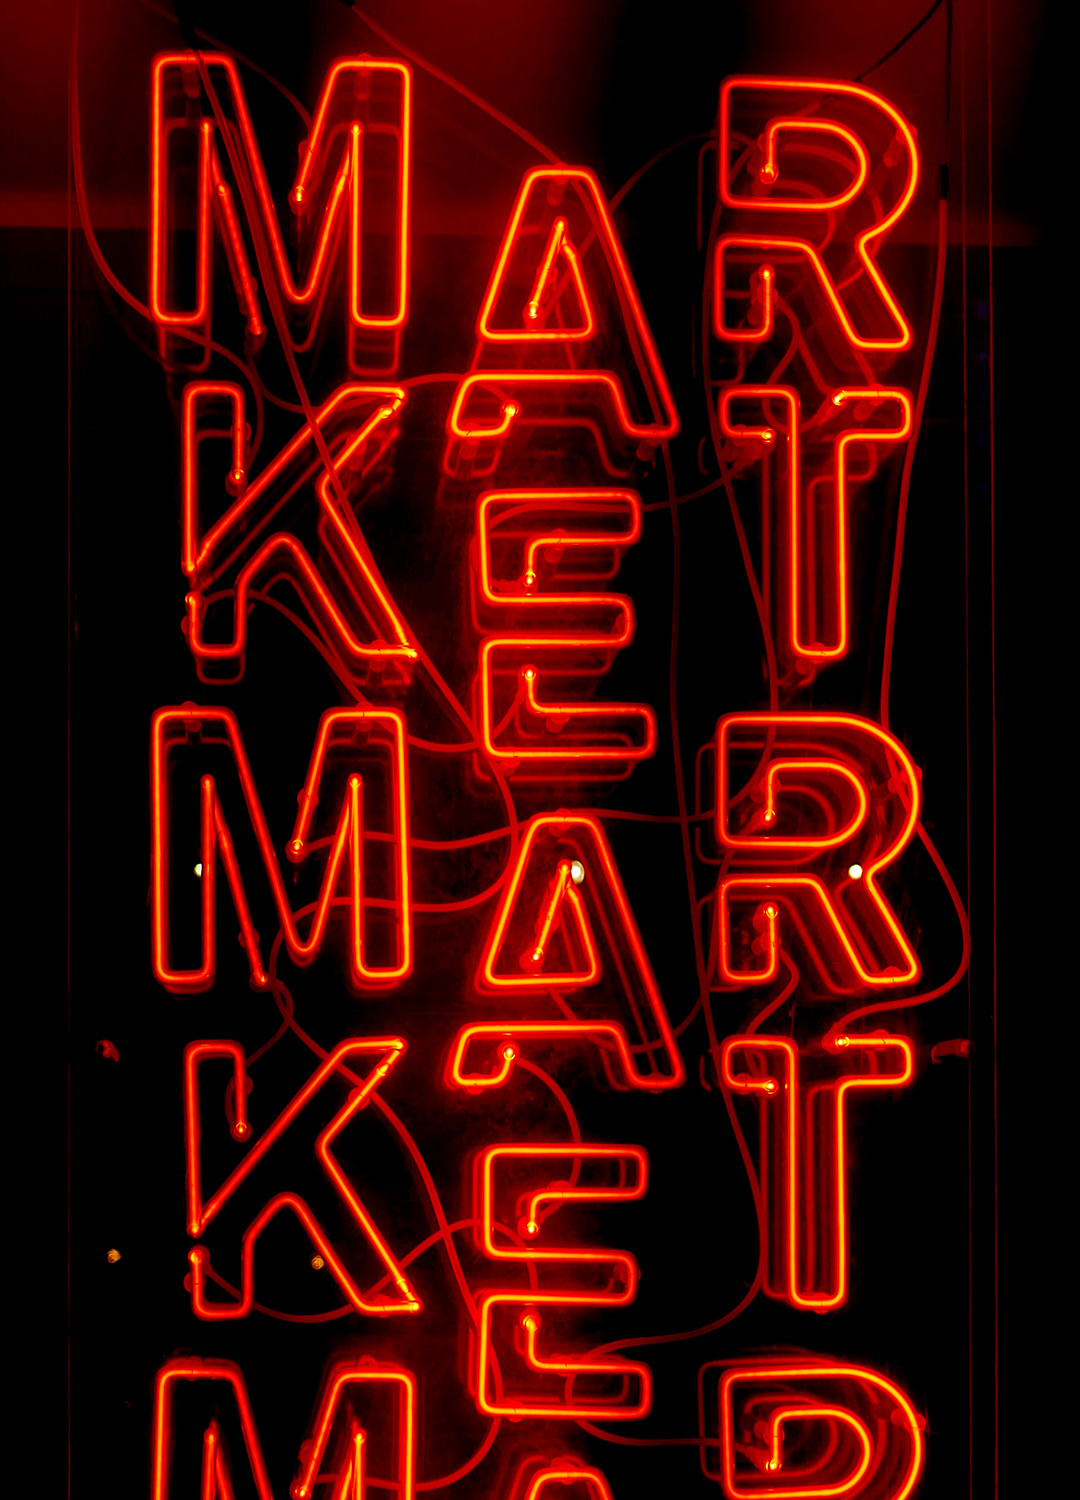 Image - narrow- market